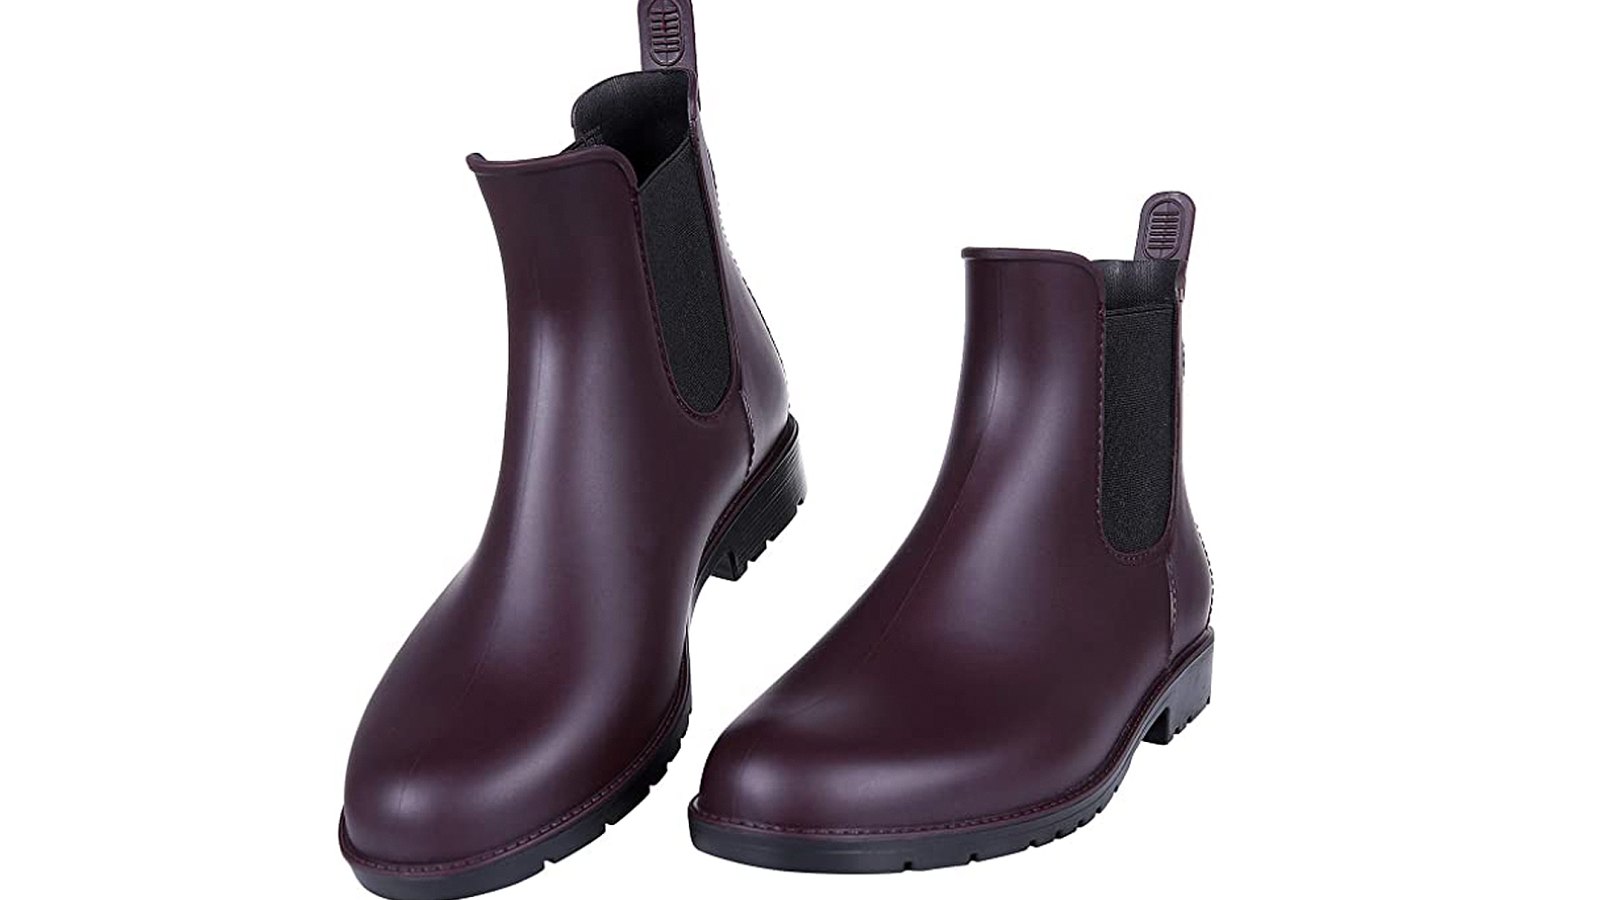 Asgard Women's Ankle Waterproof Chelsea Rain Boots